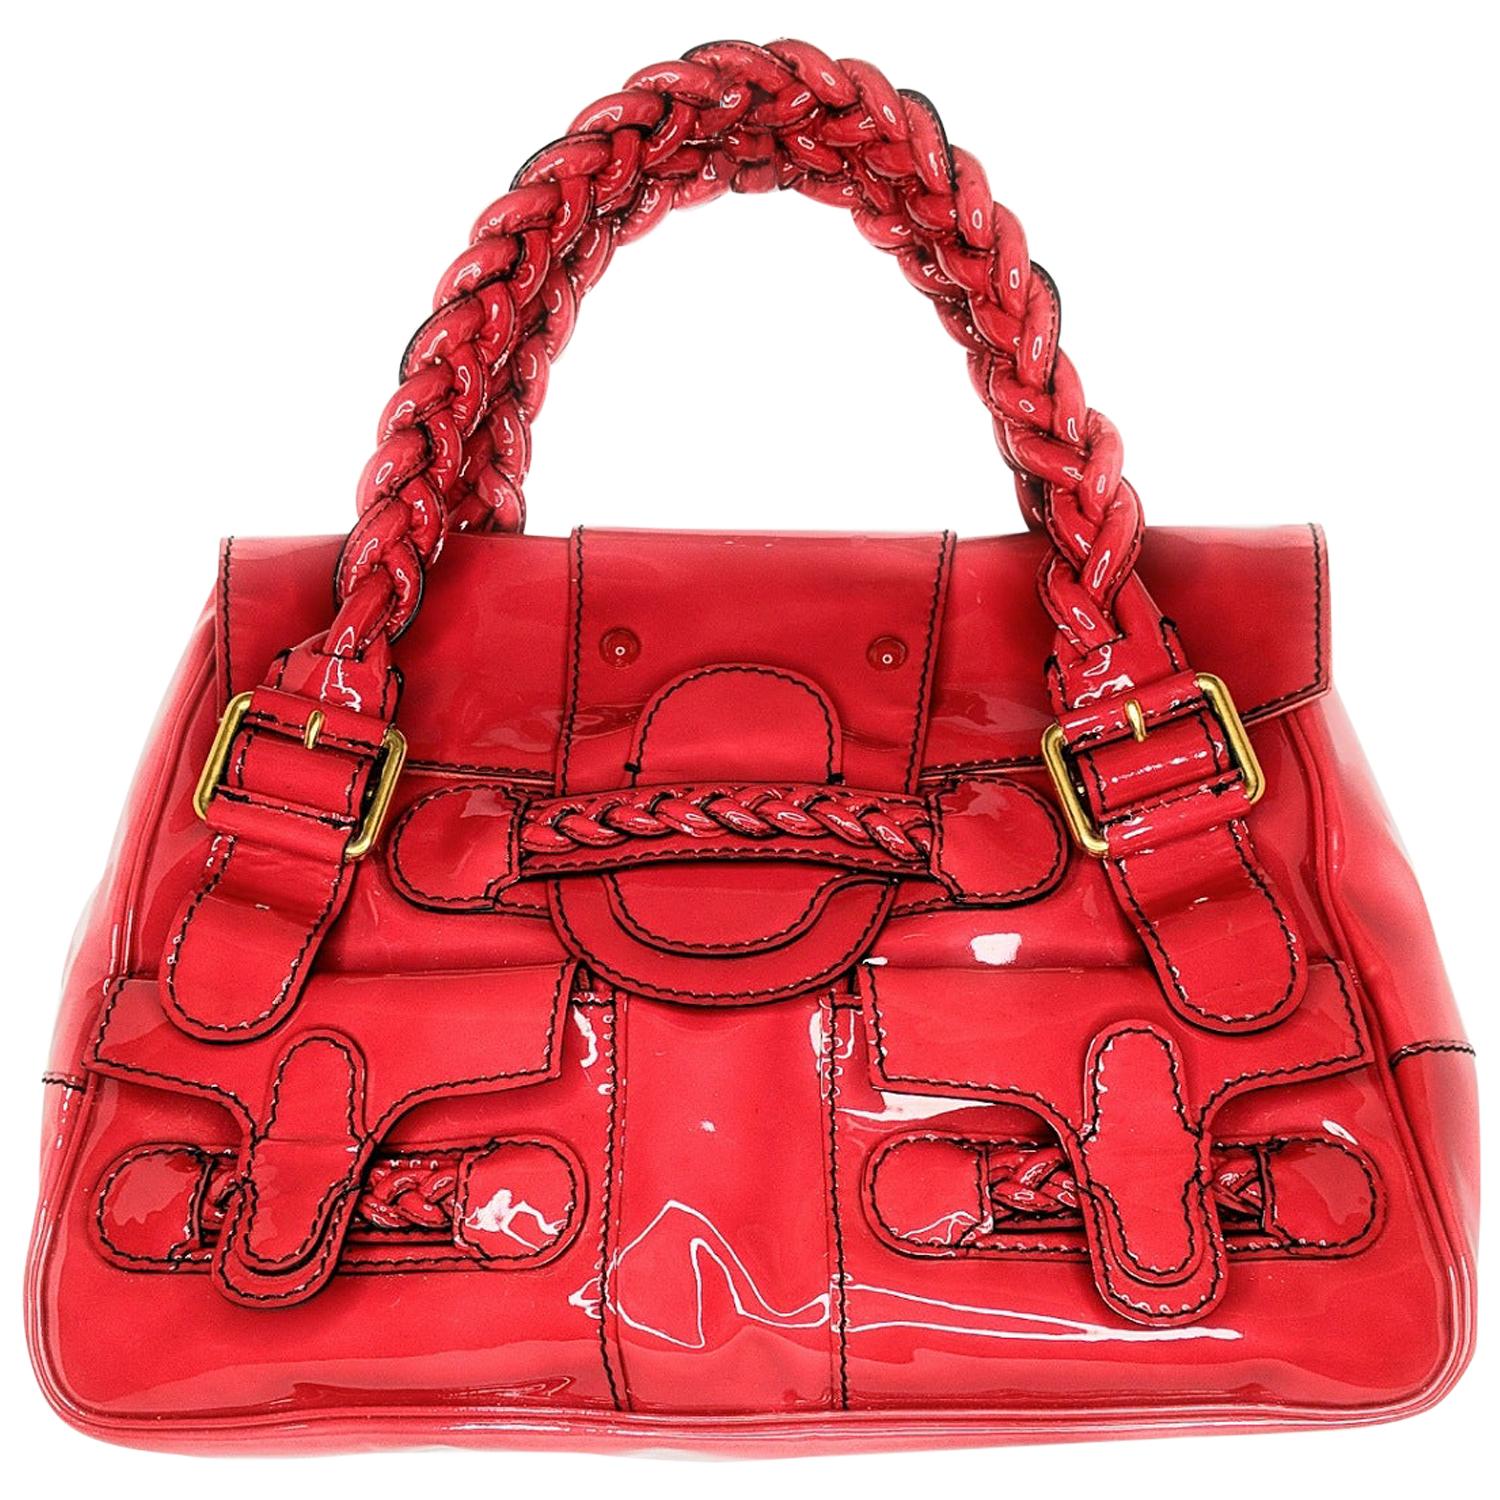 Vintage Louis Vuitton Red Handbags - 59 For Sale on 1stDibs  red lv bag, vintage  red shoulder bag, vintage red handbags